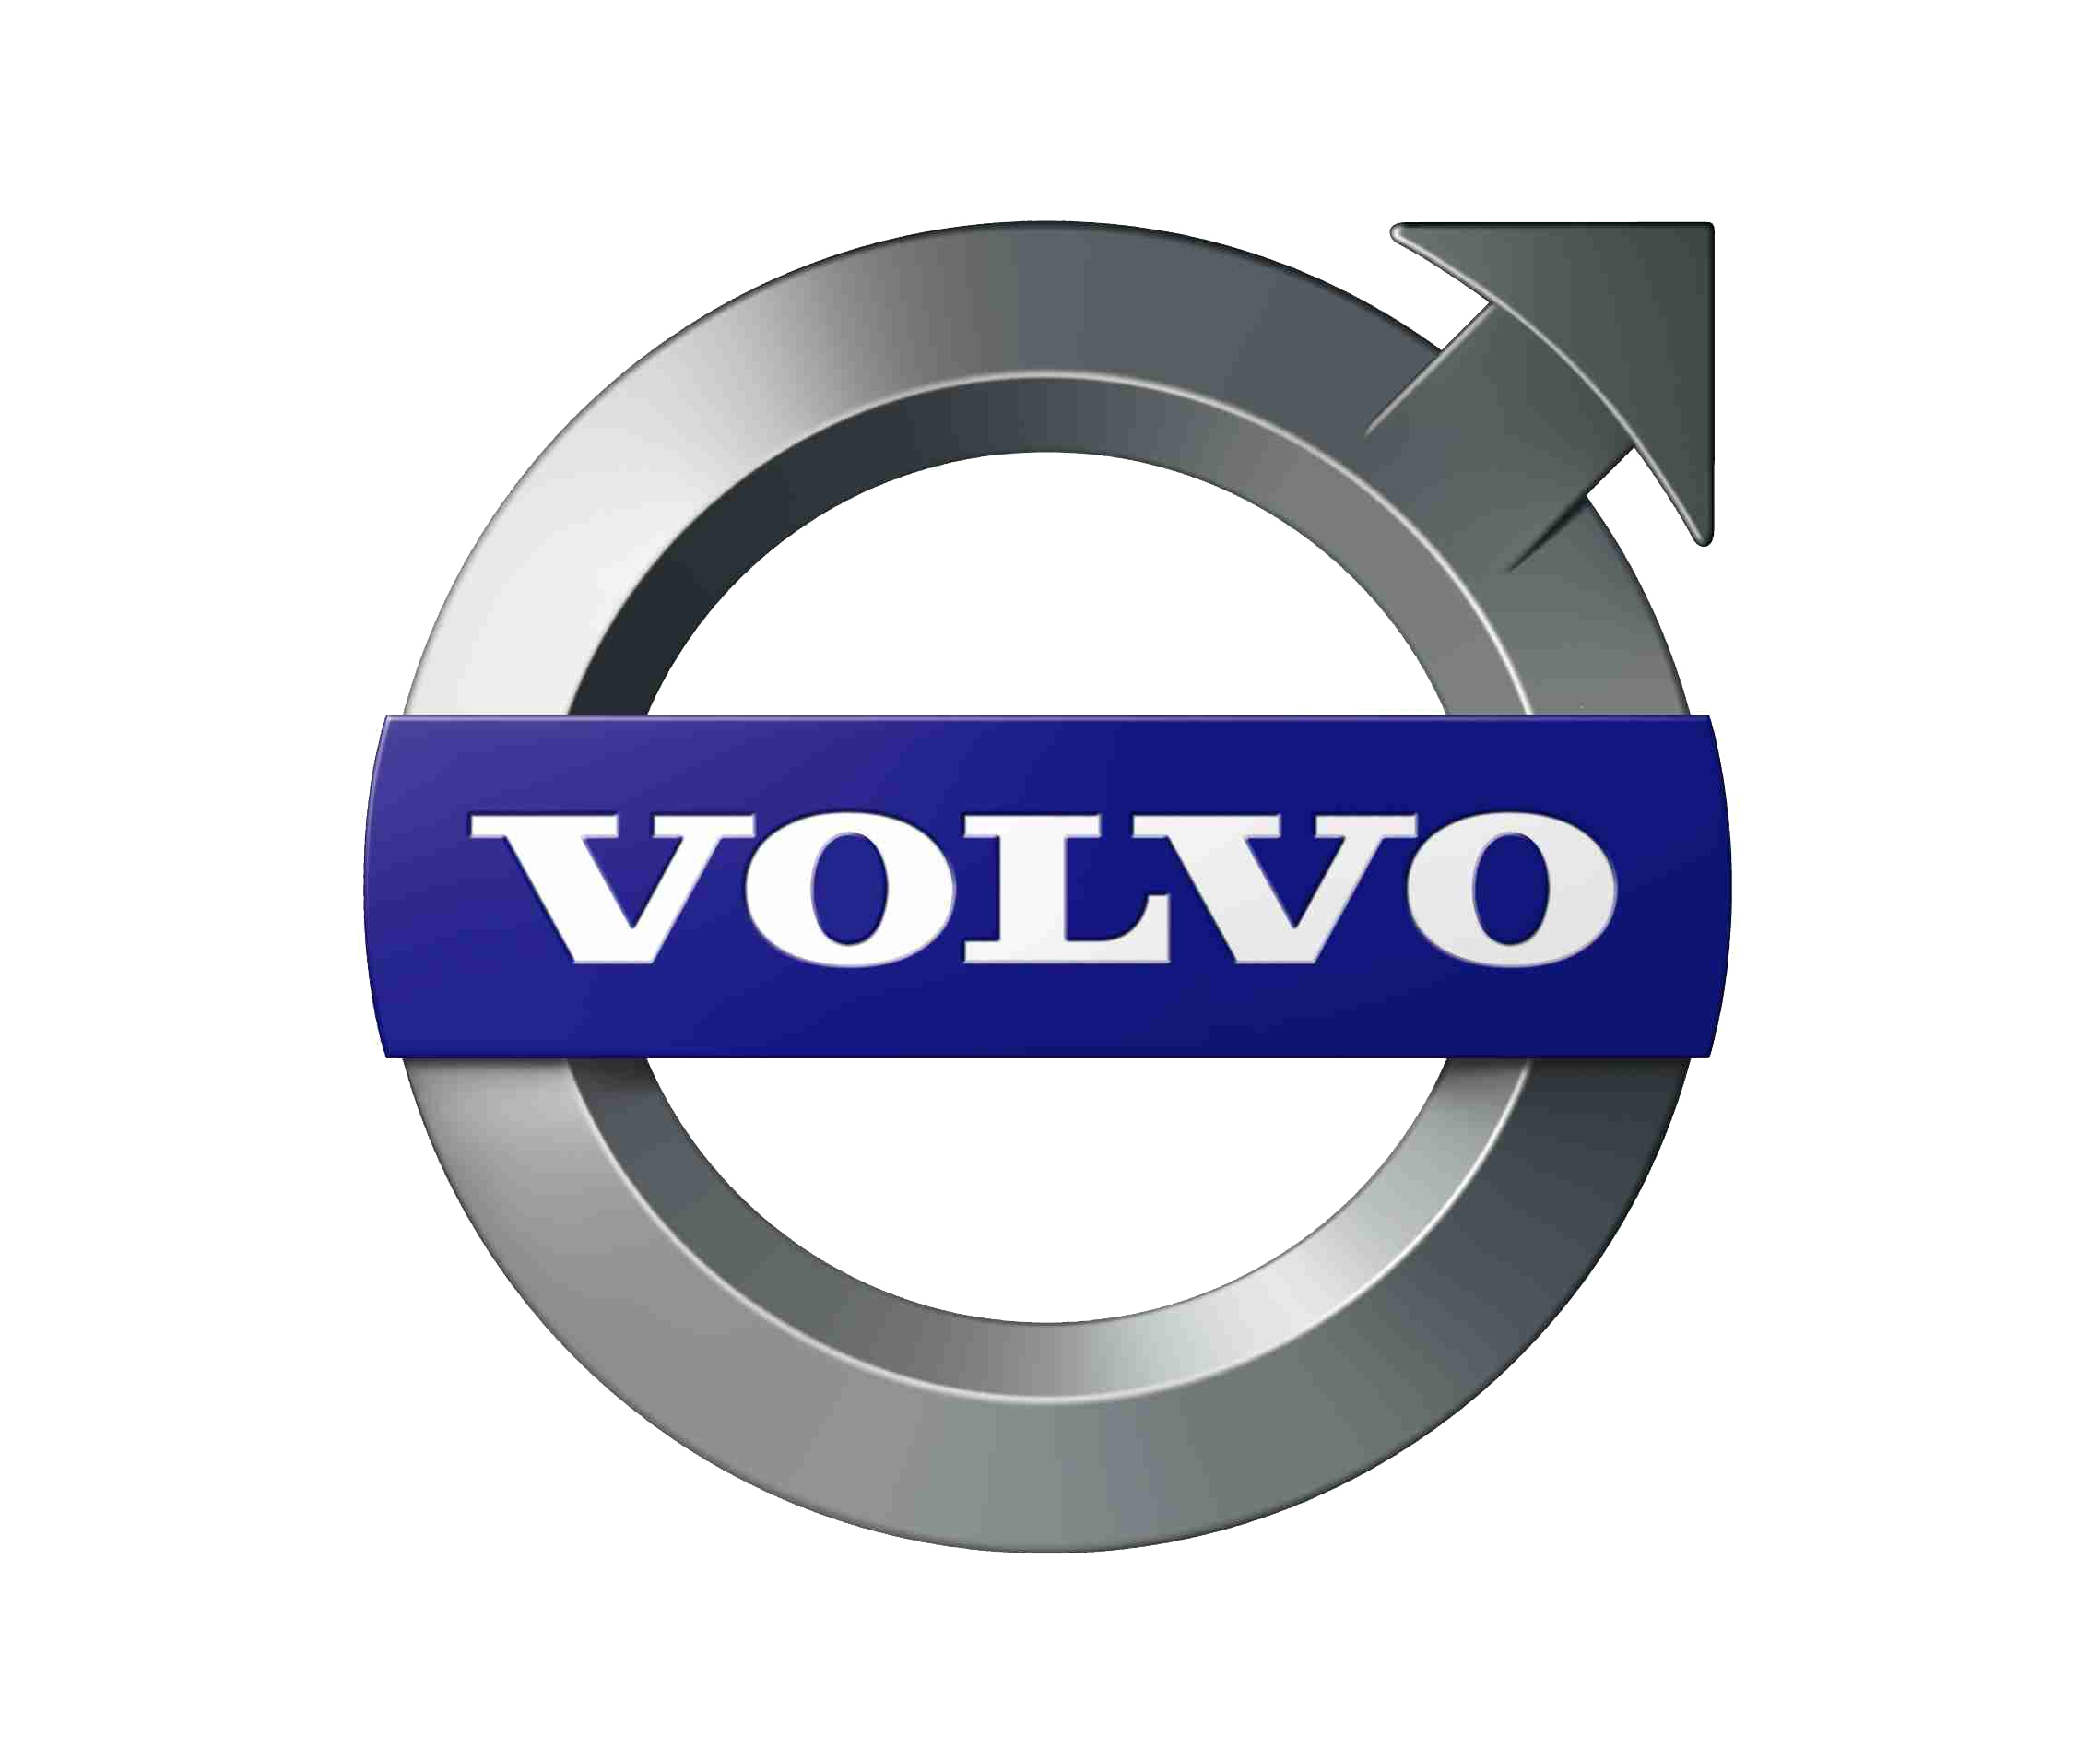 Logotipo do carro Volvo